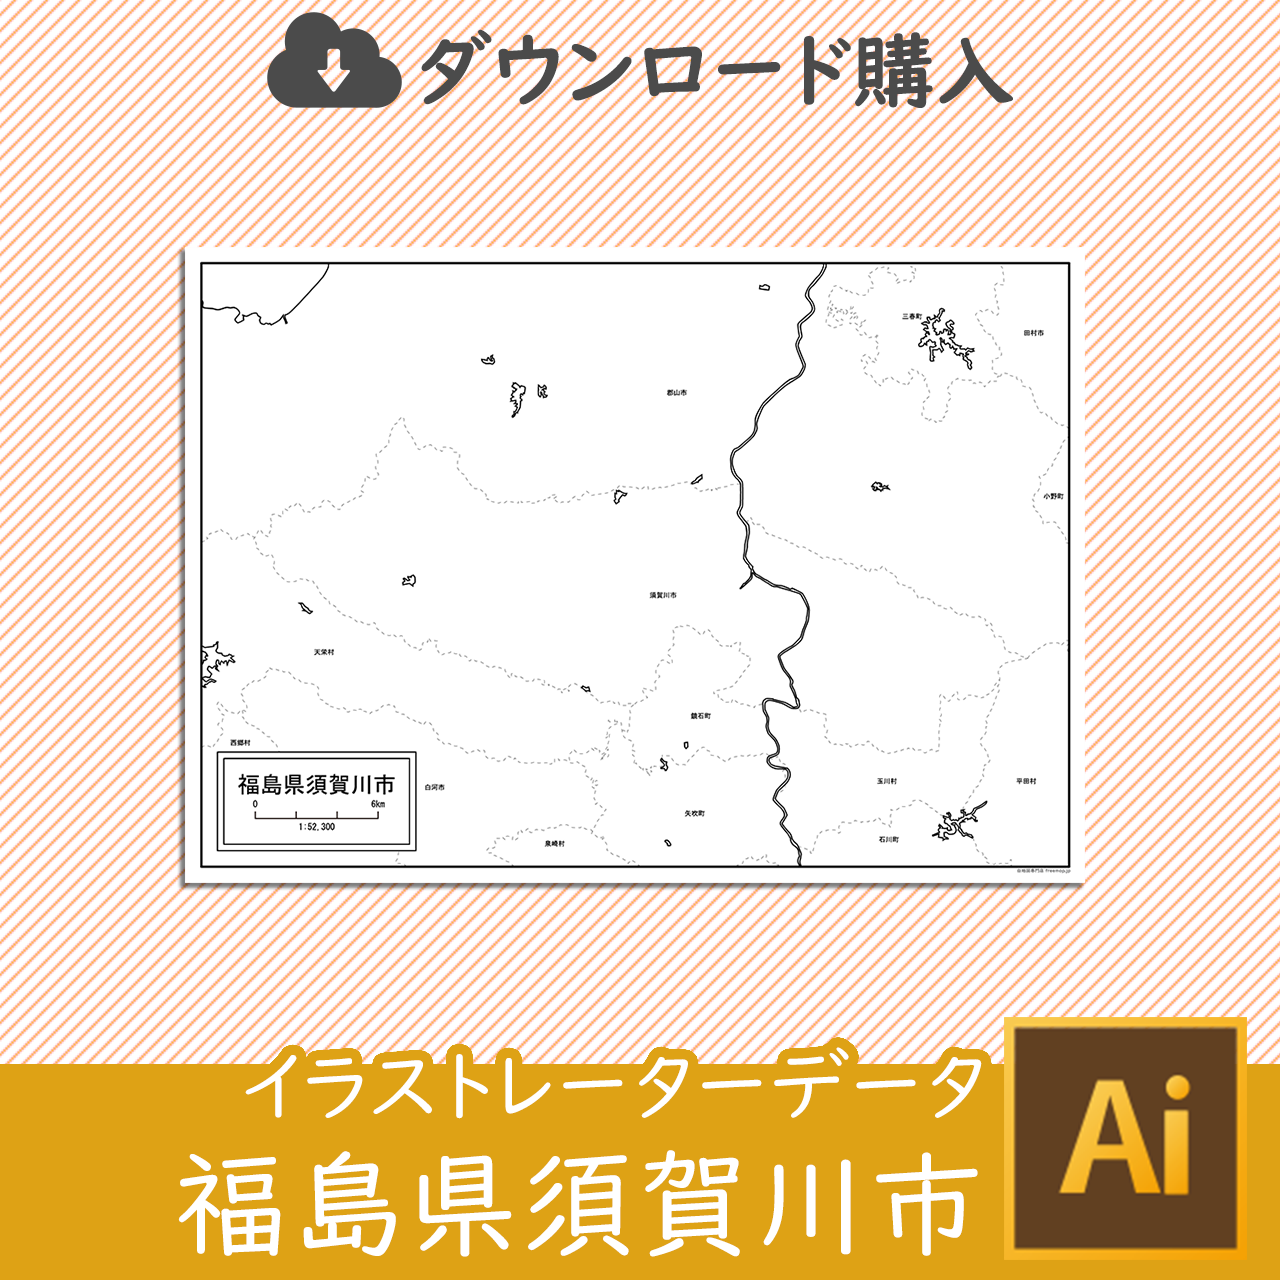 須賀川市のaiデータのサムネイル画像